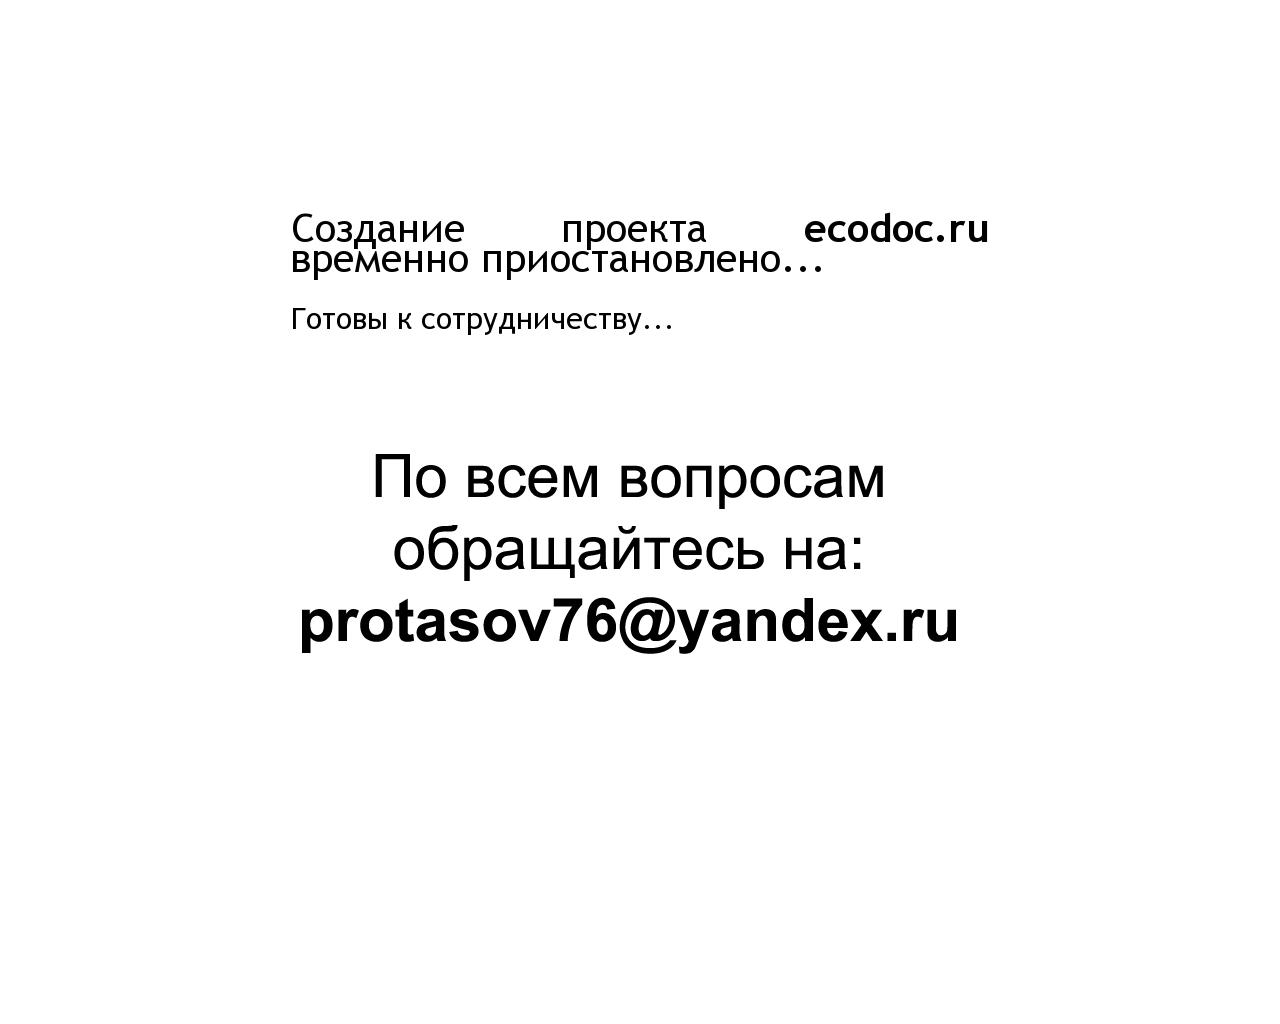 Изображение сайта ecodoc.ru в разрешении 1280x1024